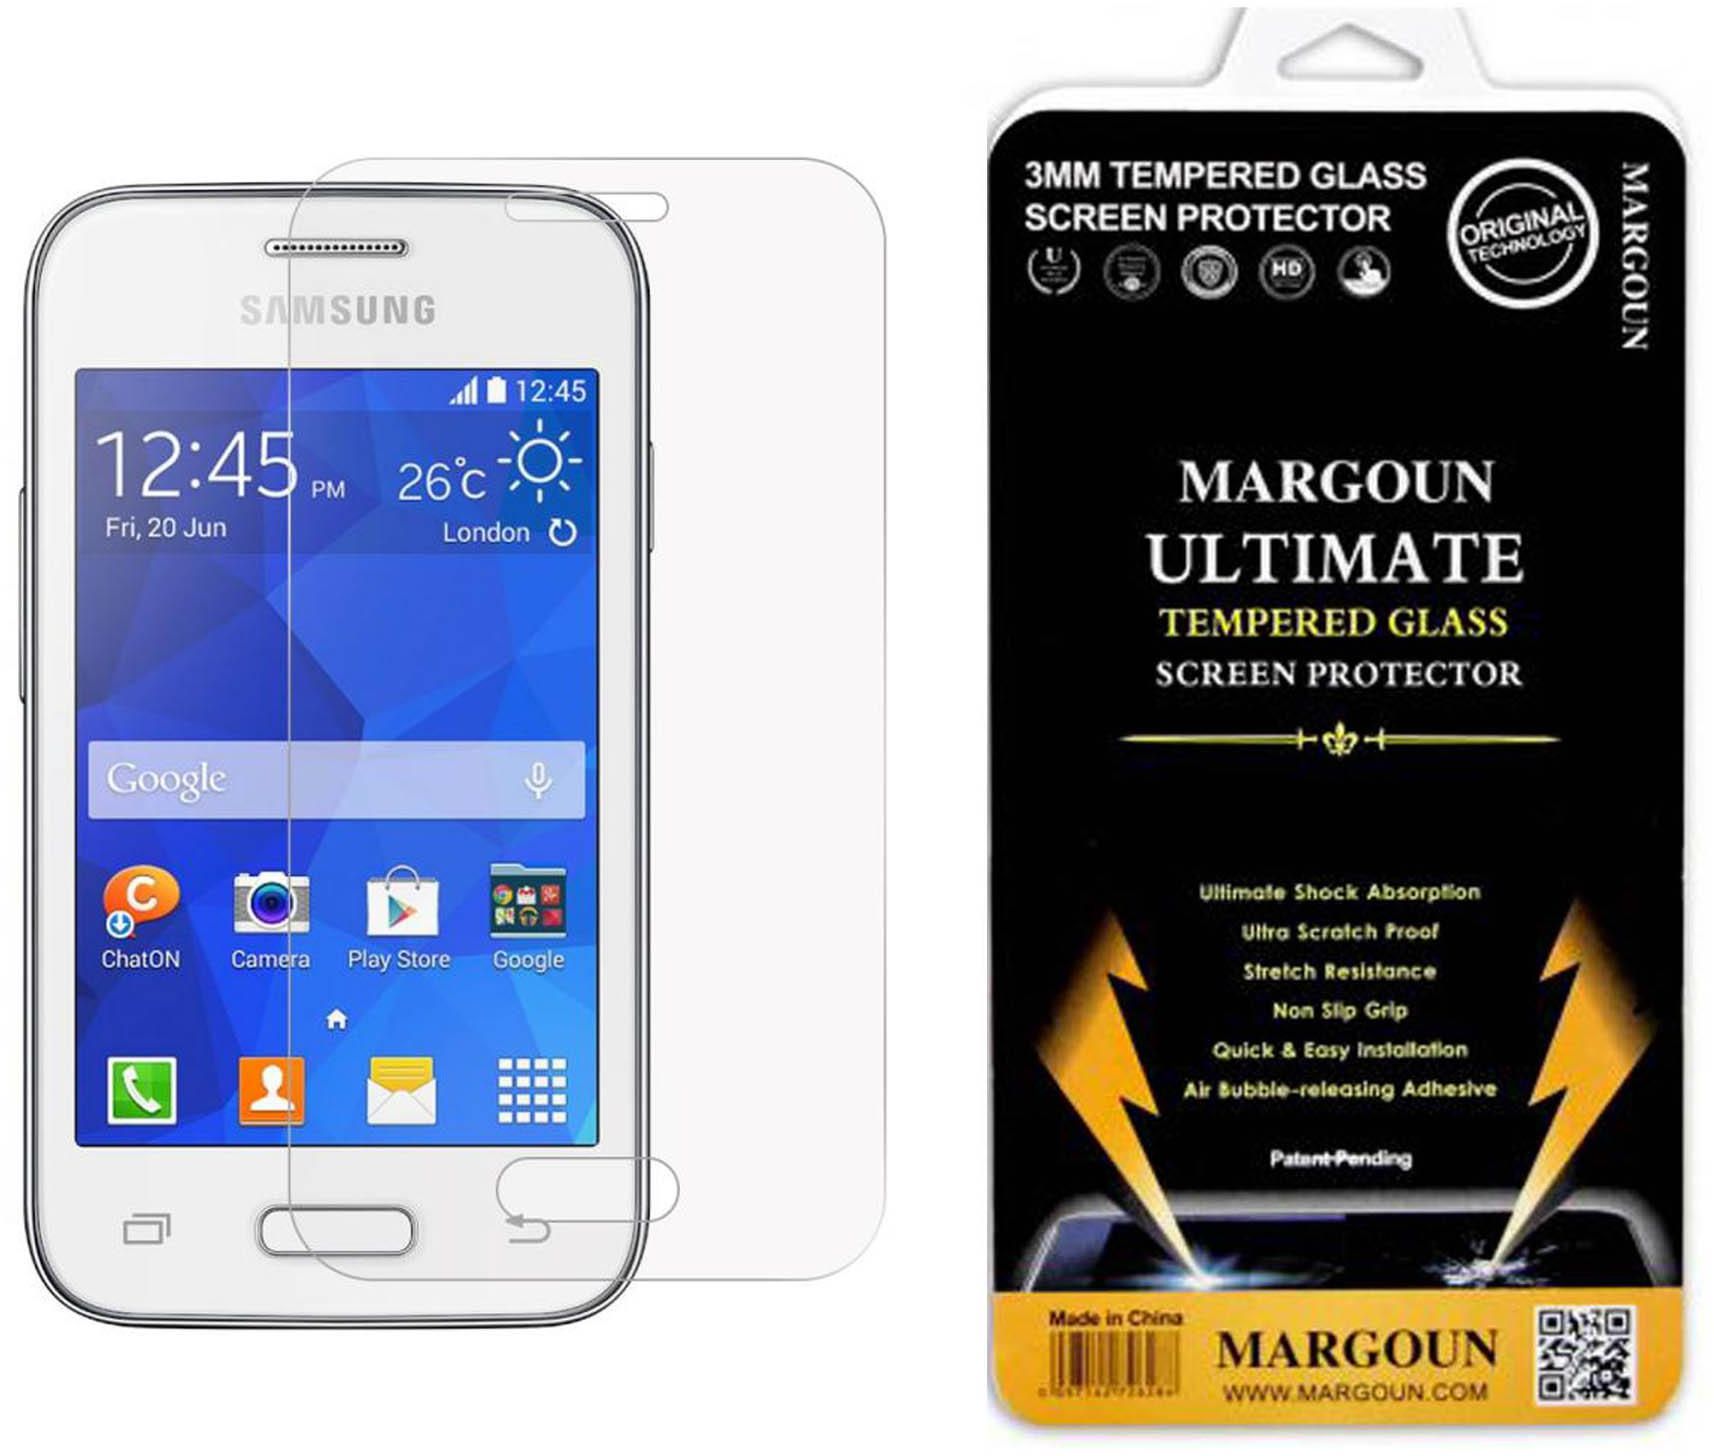 Margoun Tempered Glass Screen Protector for Samsung Galaxy Young